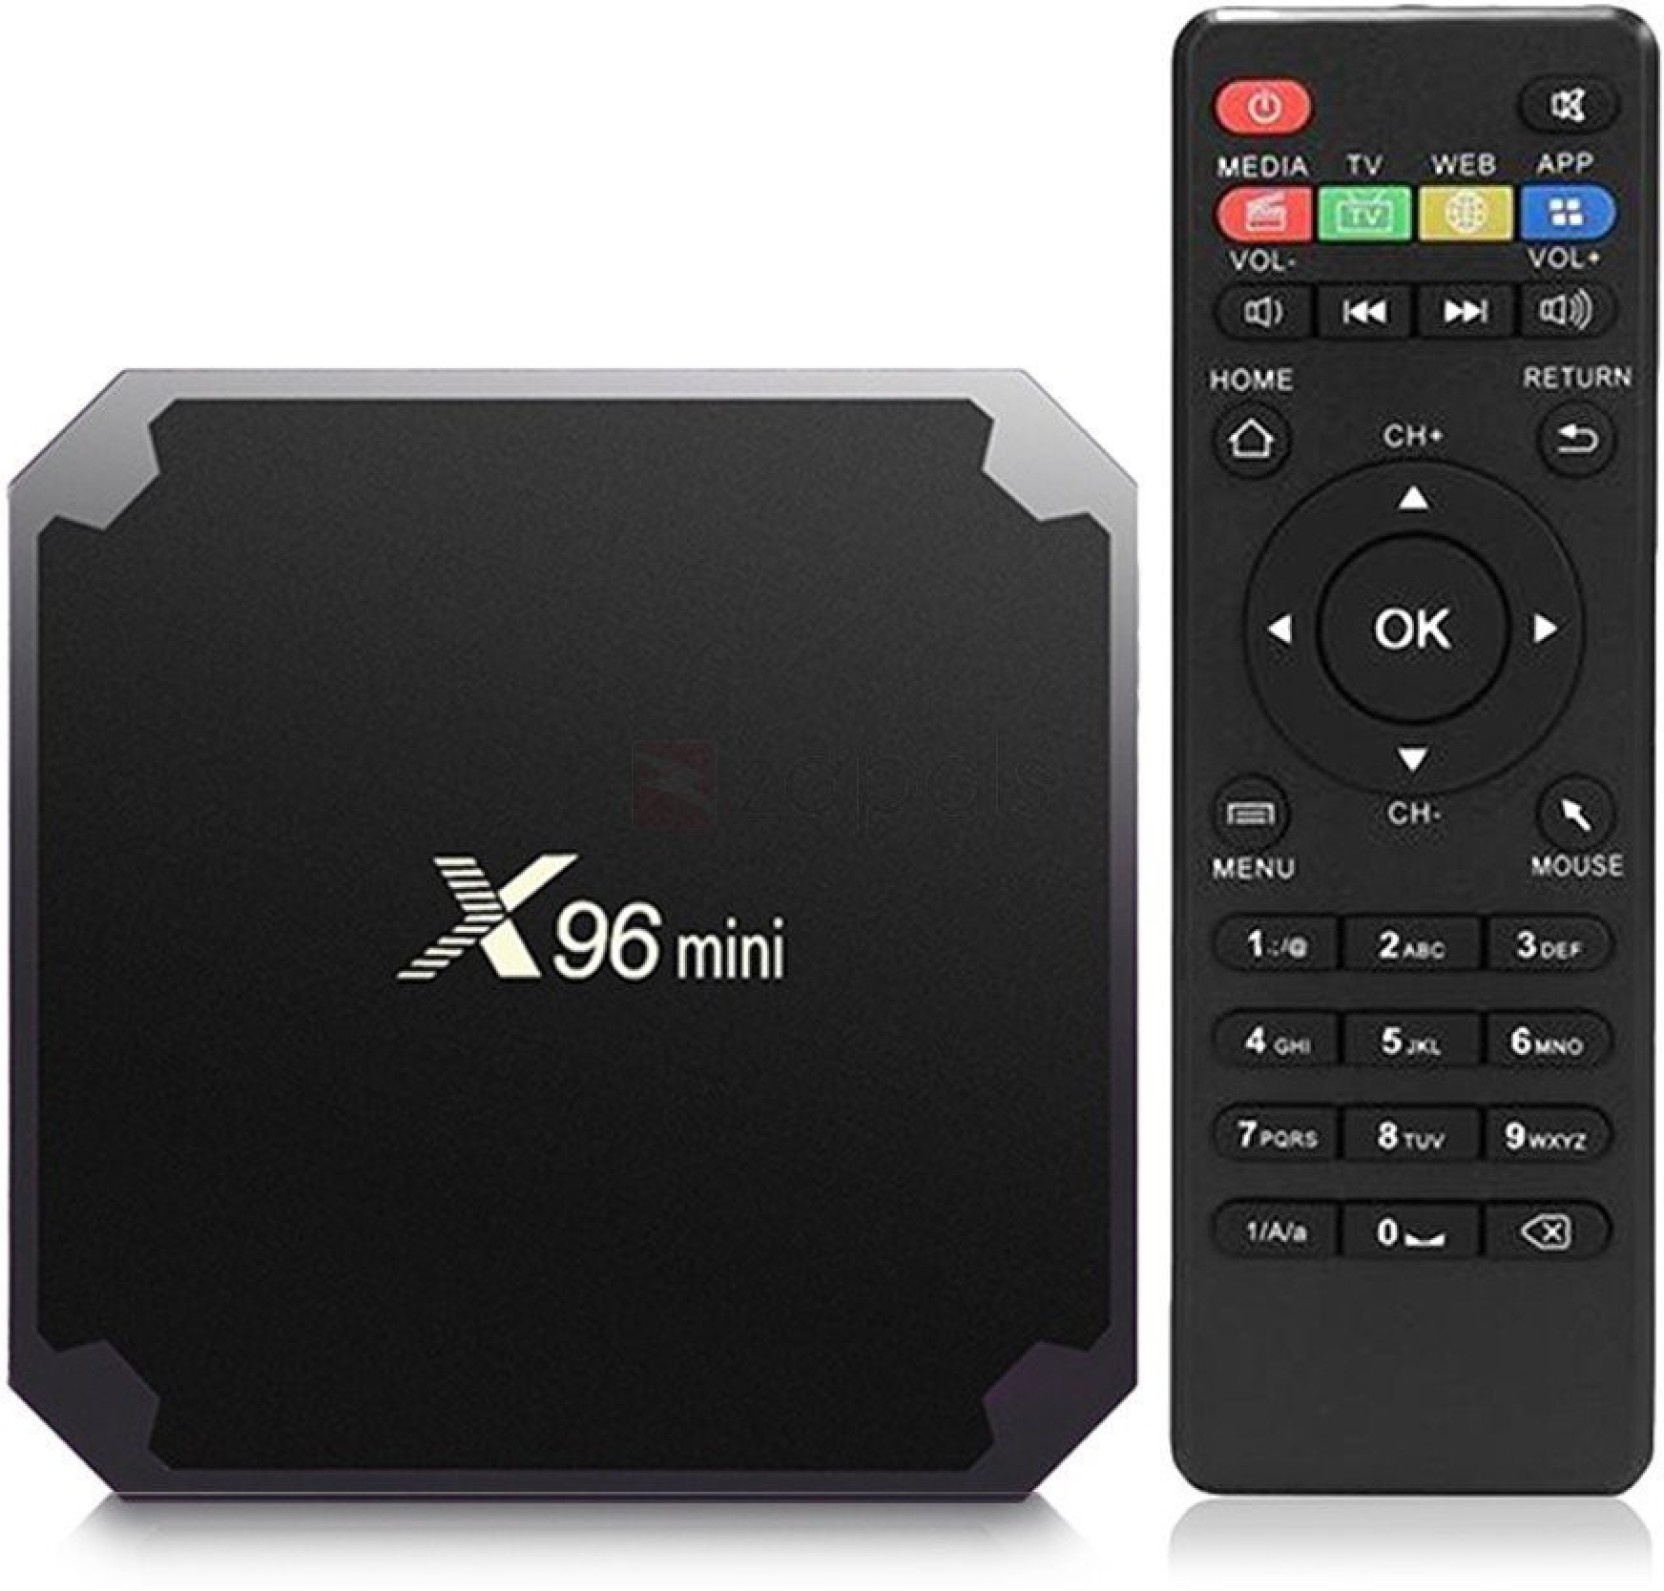 XiaomiProducts | X96 Mini TV Box